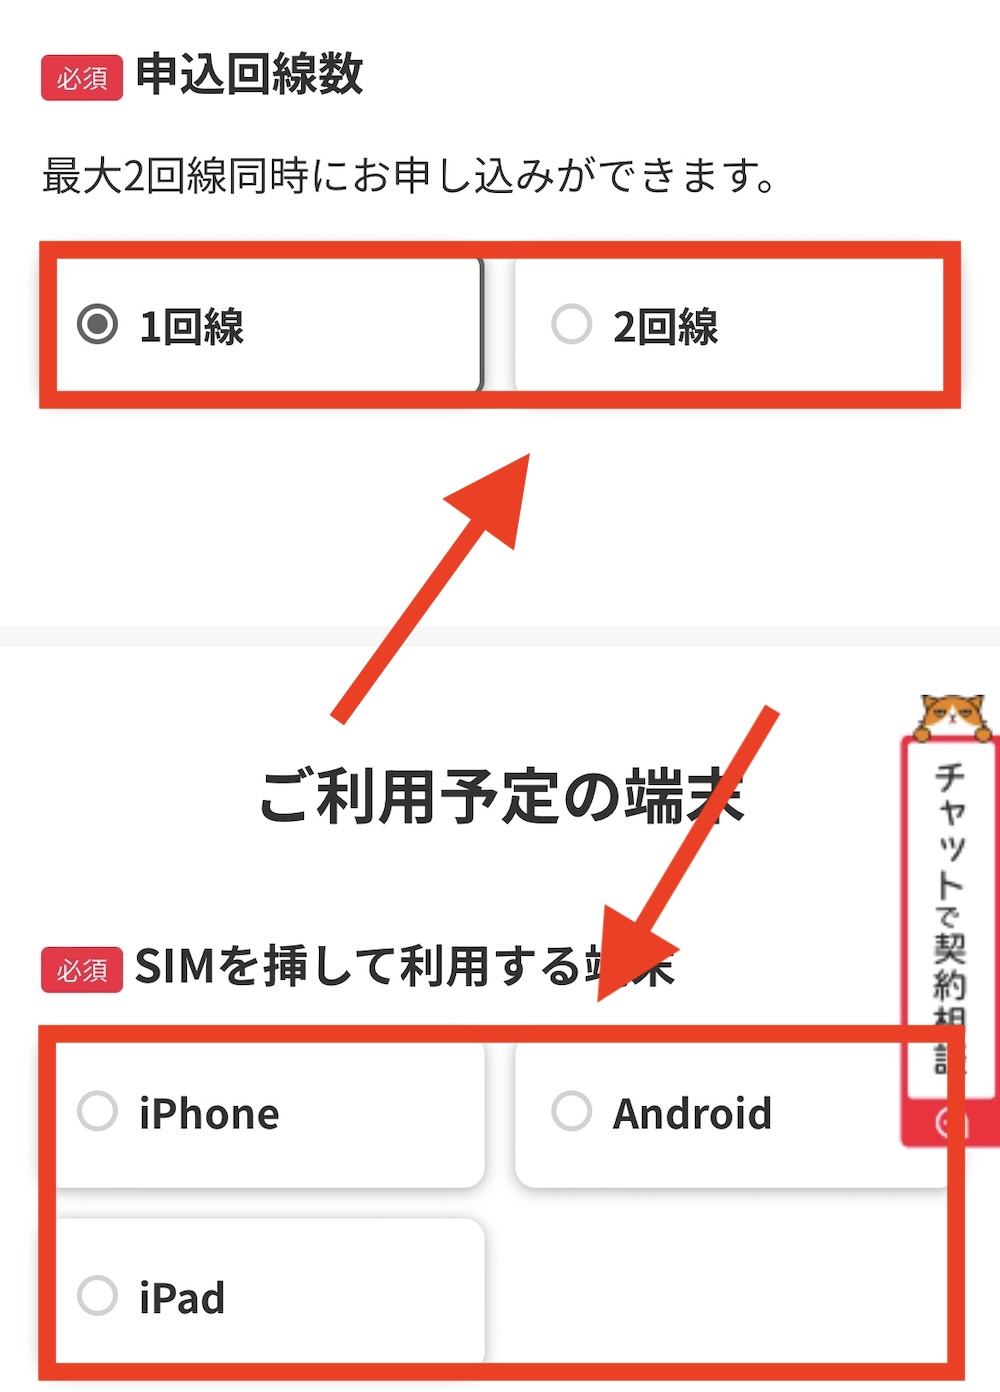 ワイモバイル SIM 申し込み3